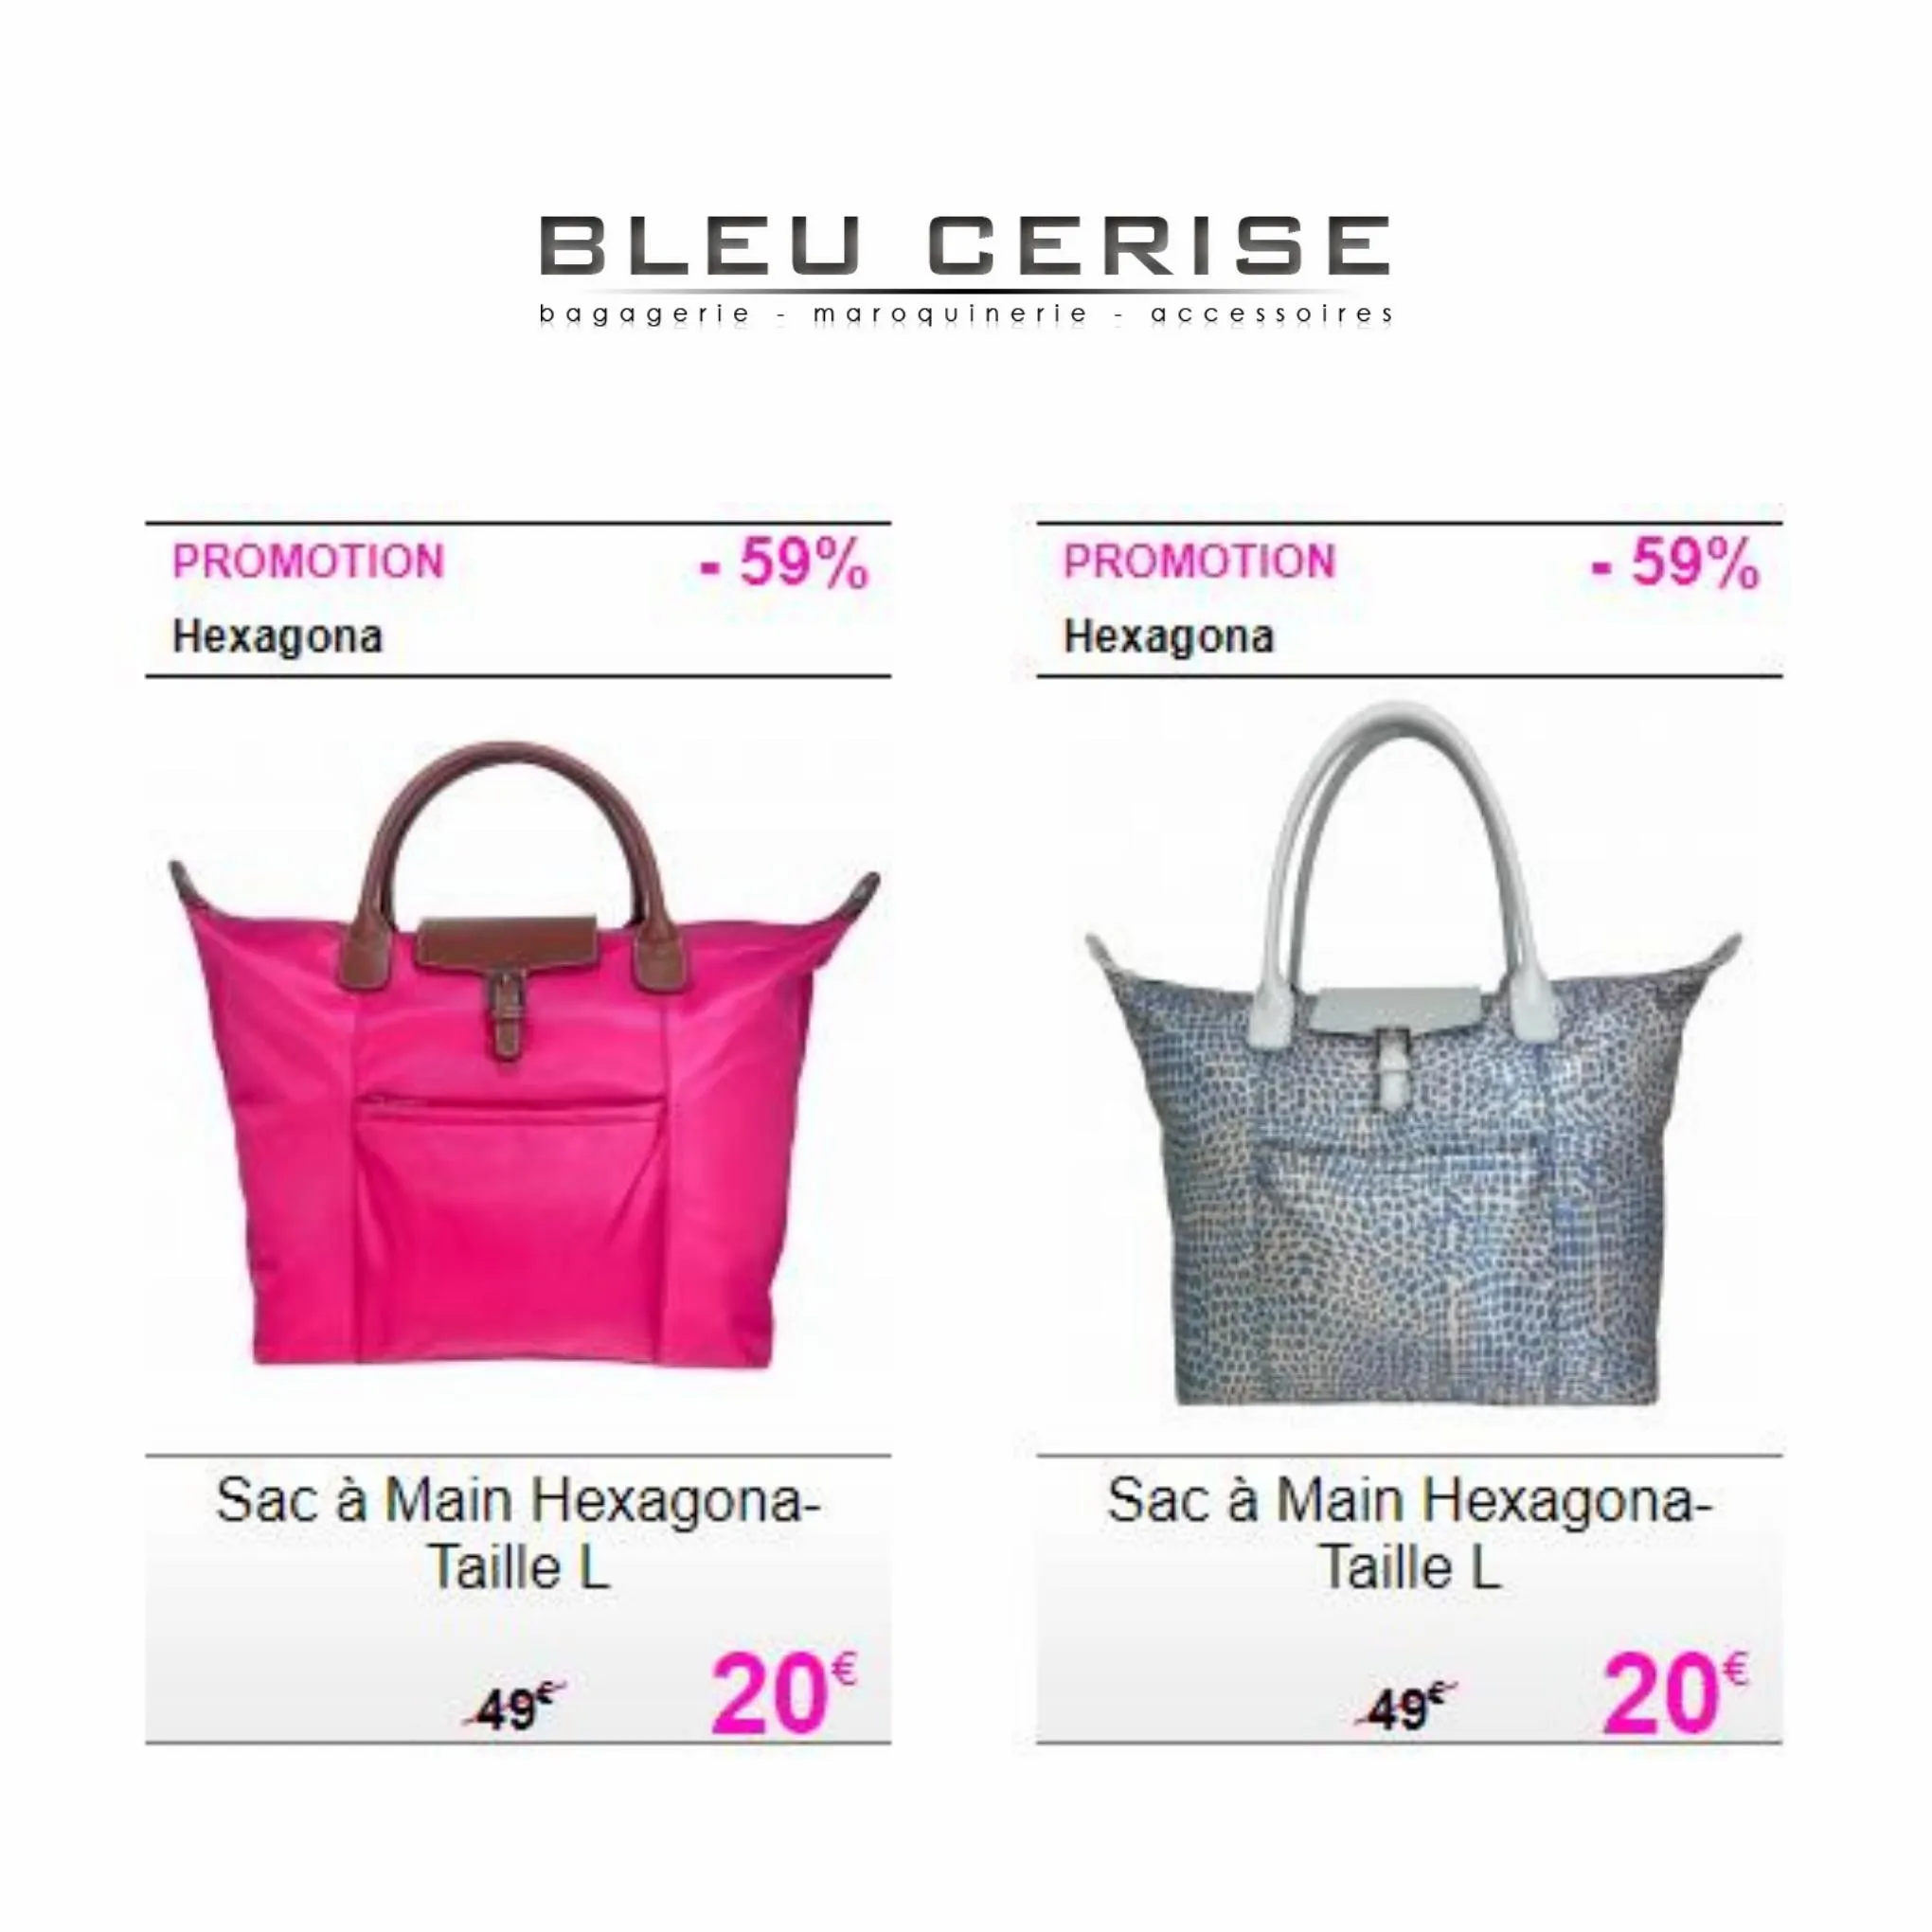 Catalogue Les meilleures offres sur les sacs pour femmes, page 00002